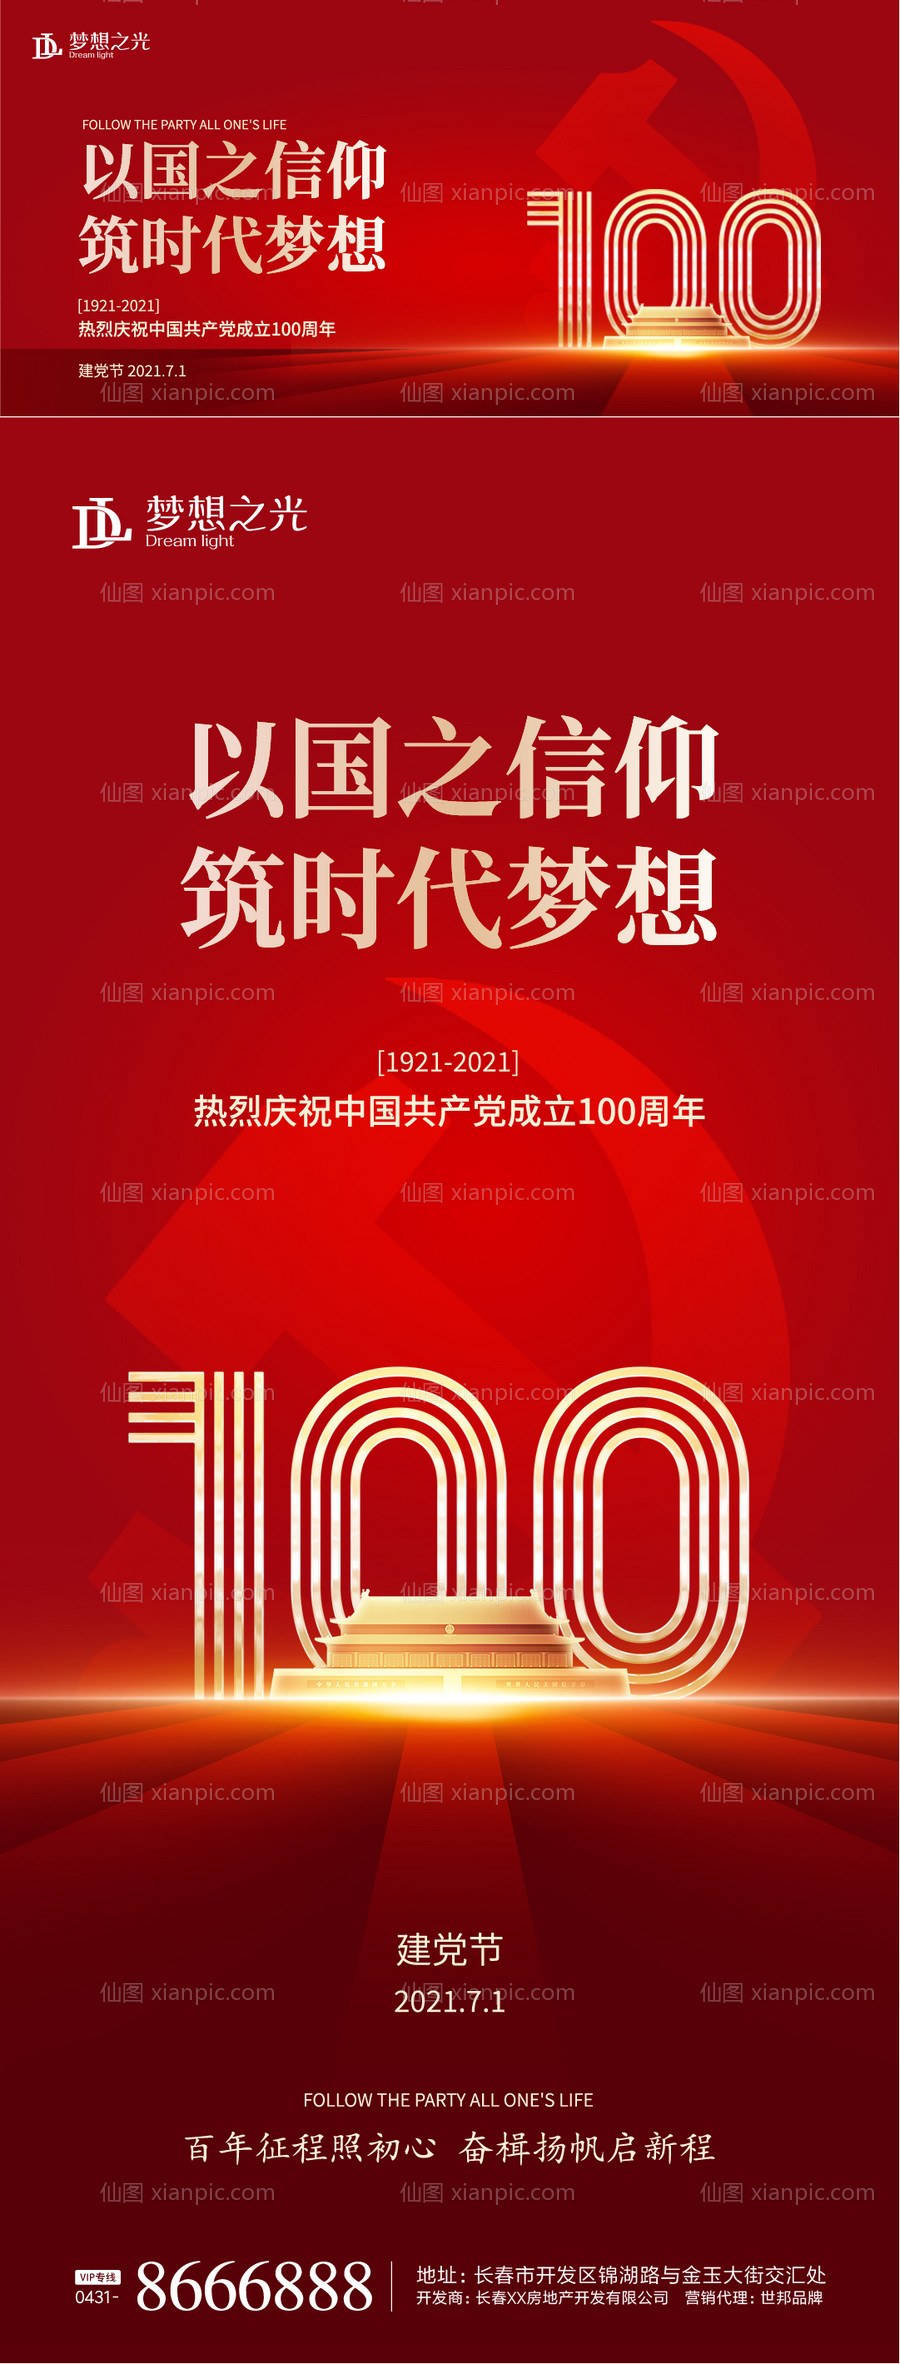 素材乐-100周年建党海报